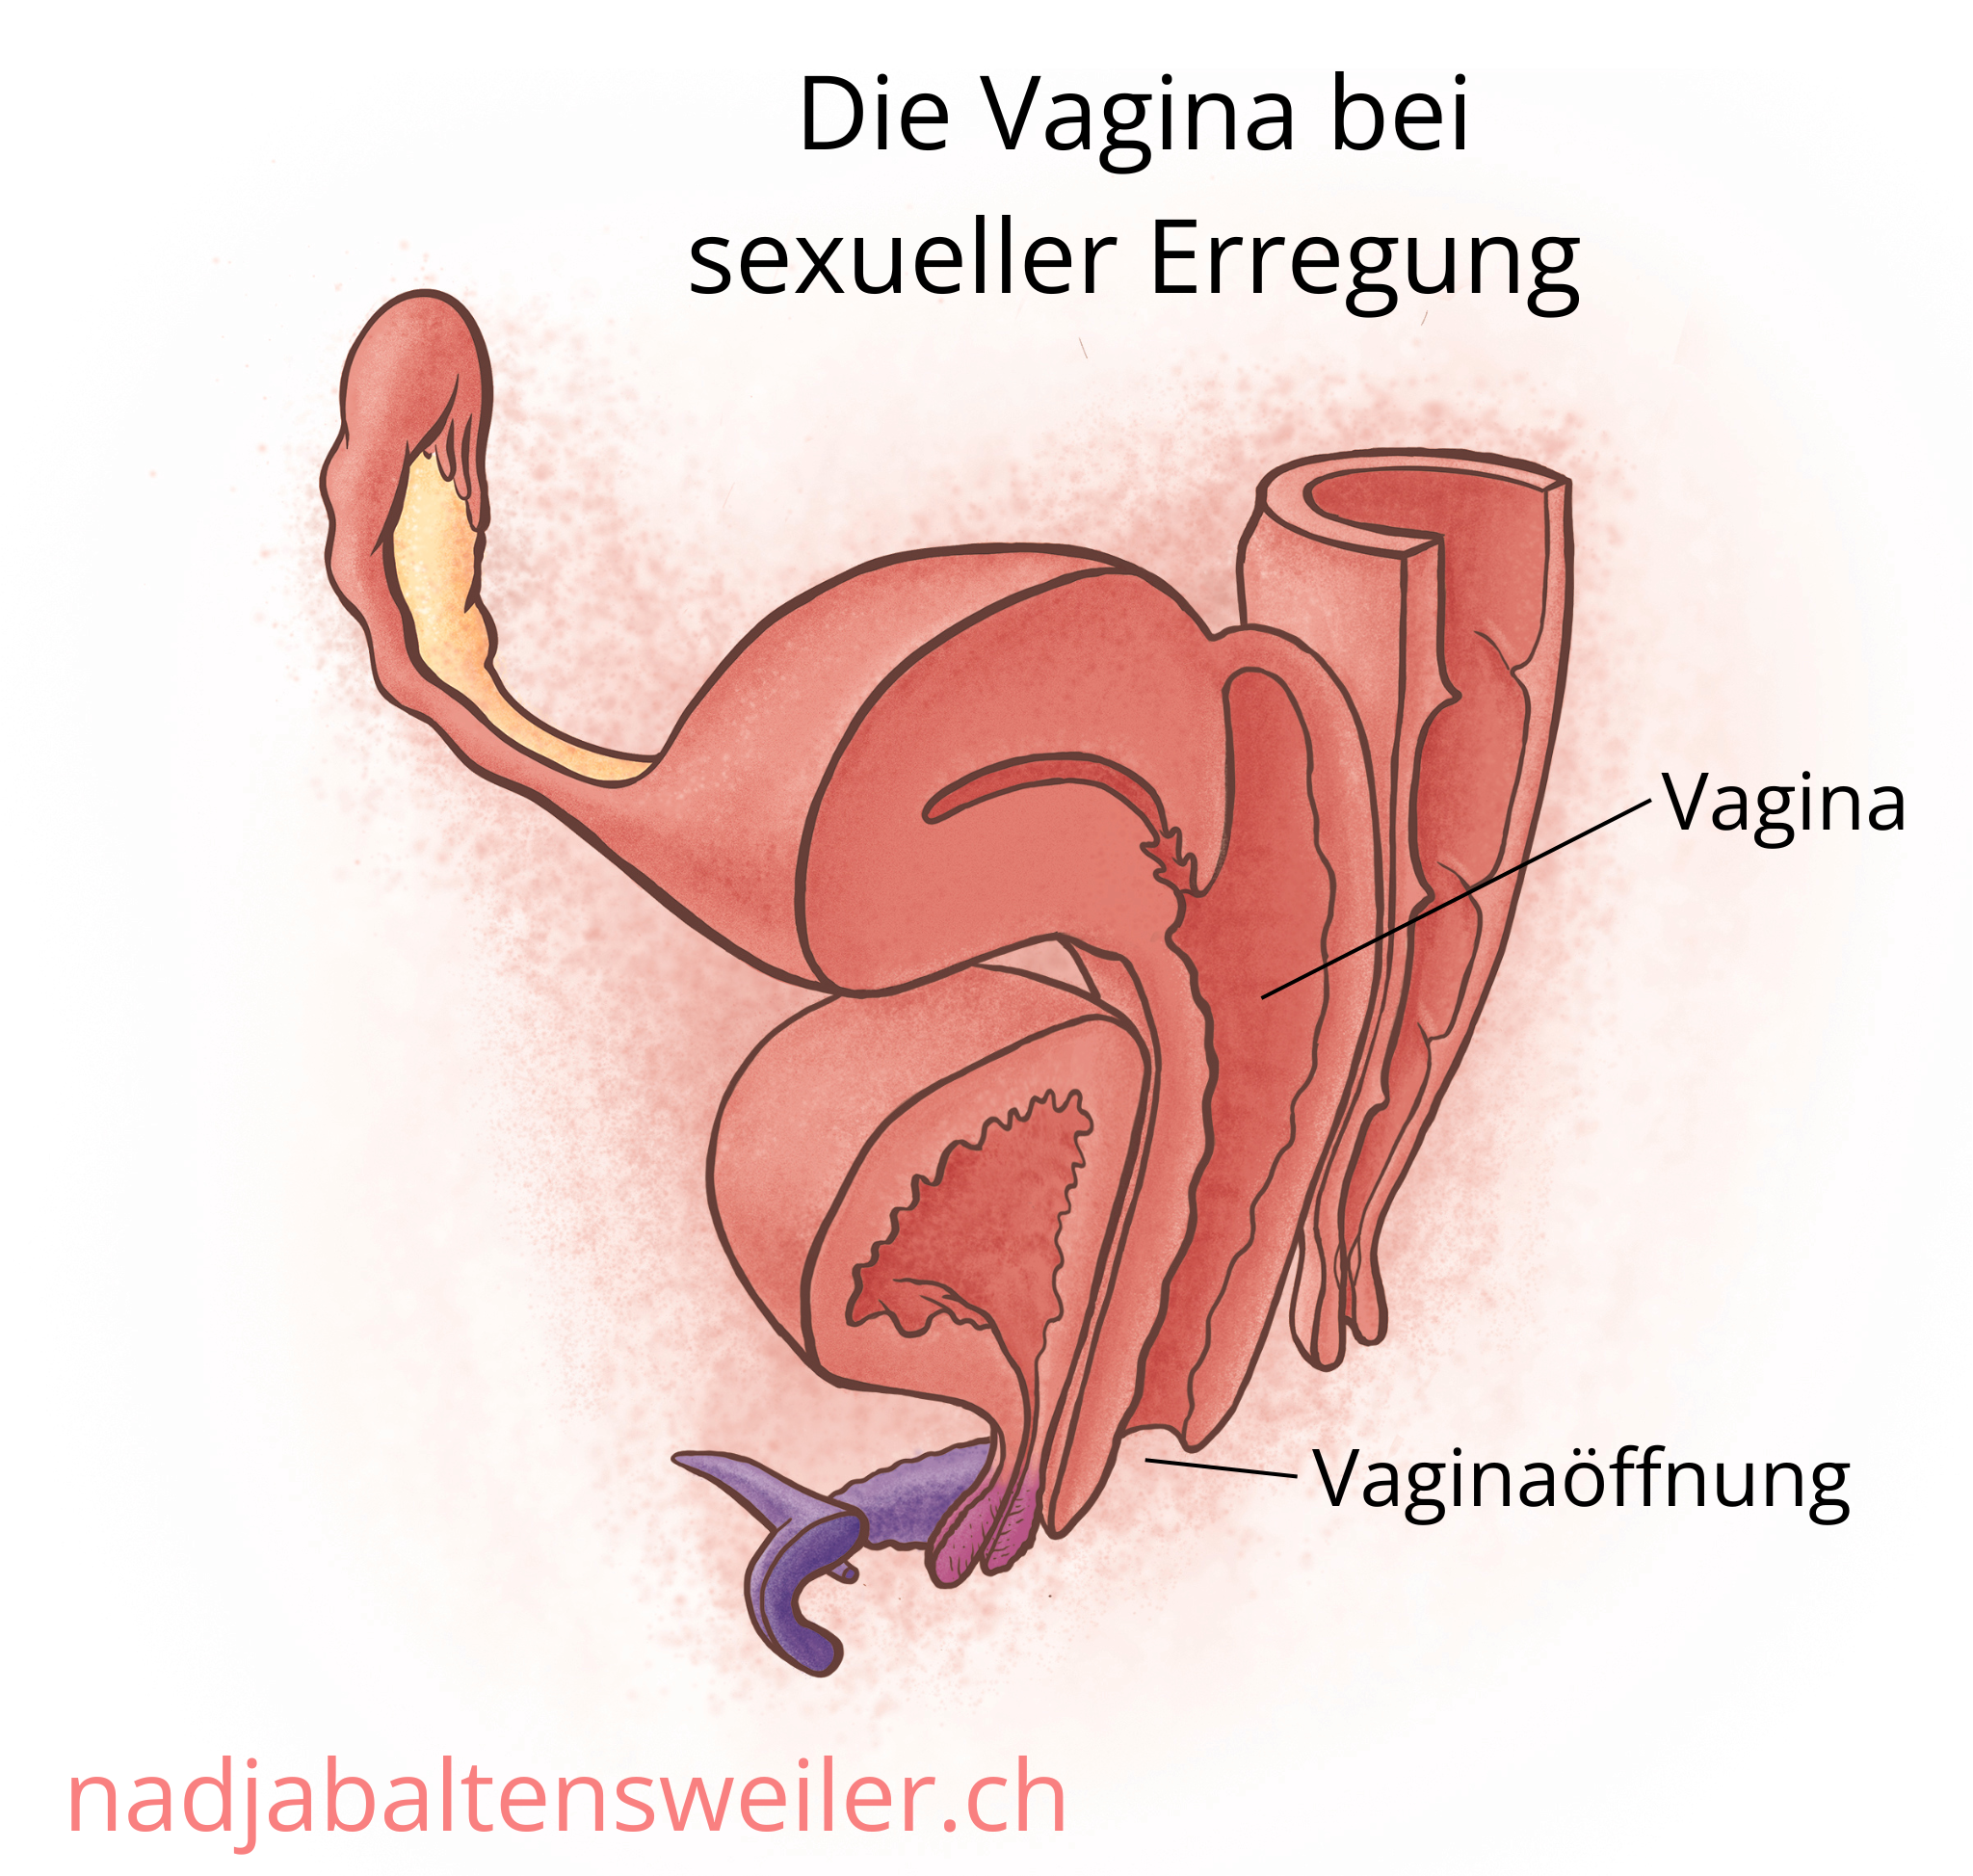 Das Bild zeigt einen Längsschnitt durch Geschlechtsorgane bei sexueller Erregung. Die Vagina ist weit und aufgespannt wie ein Ballon.